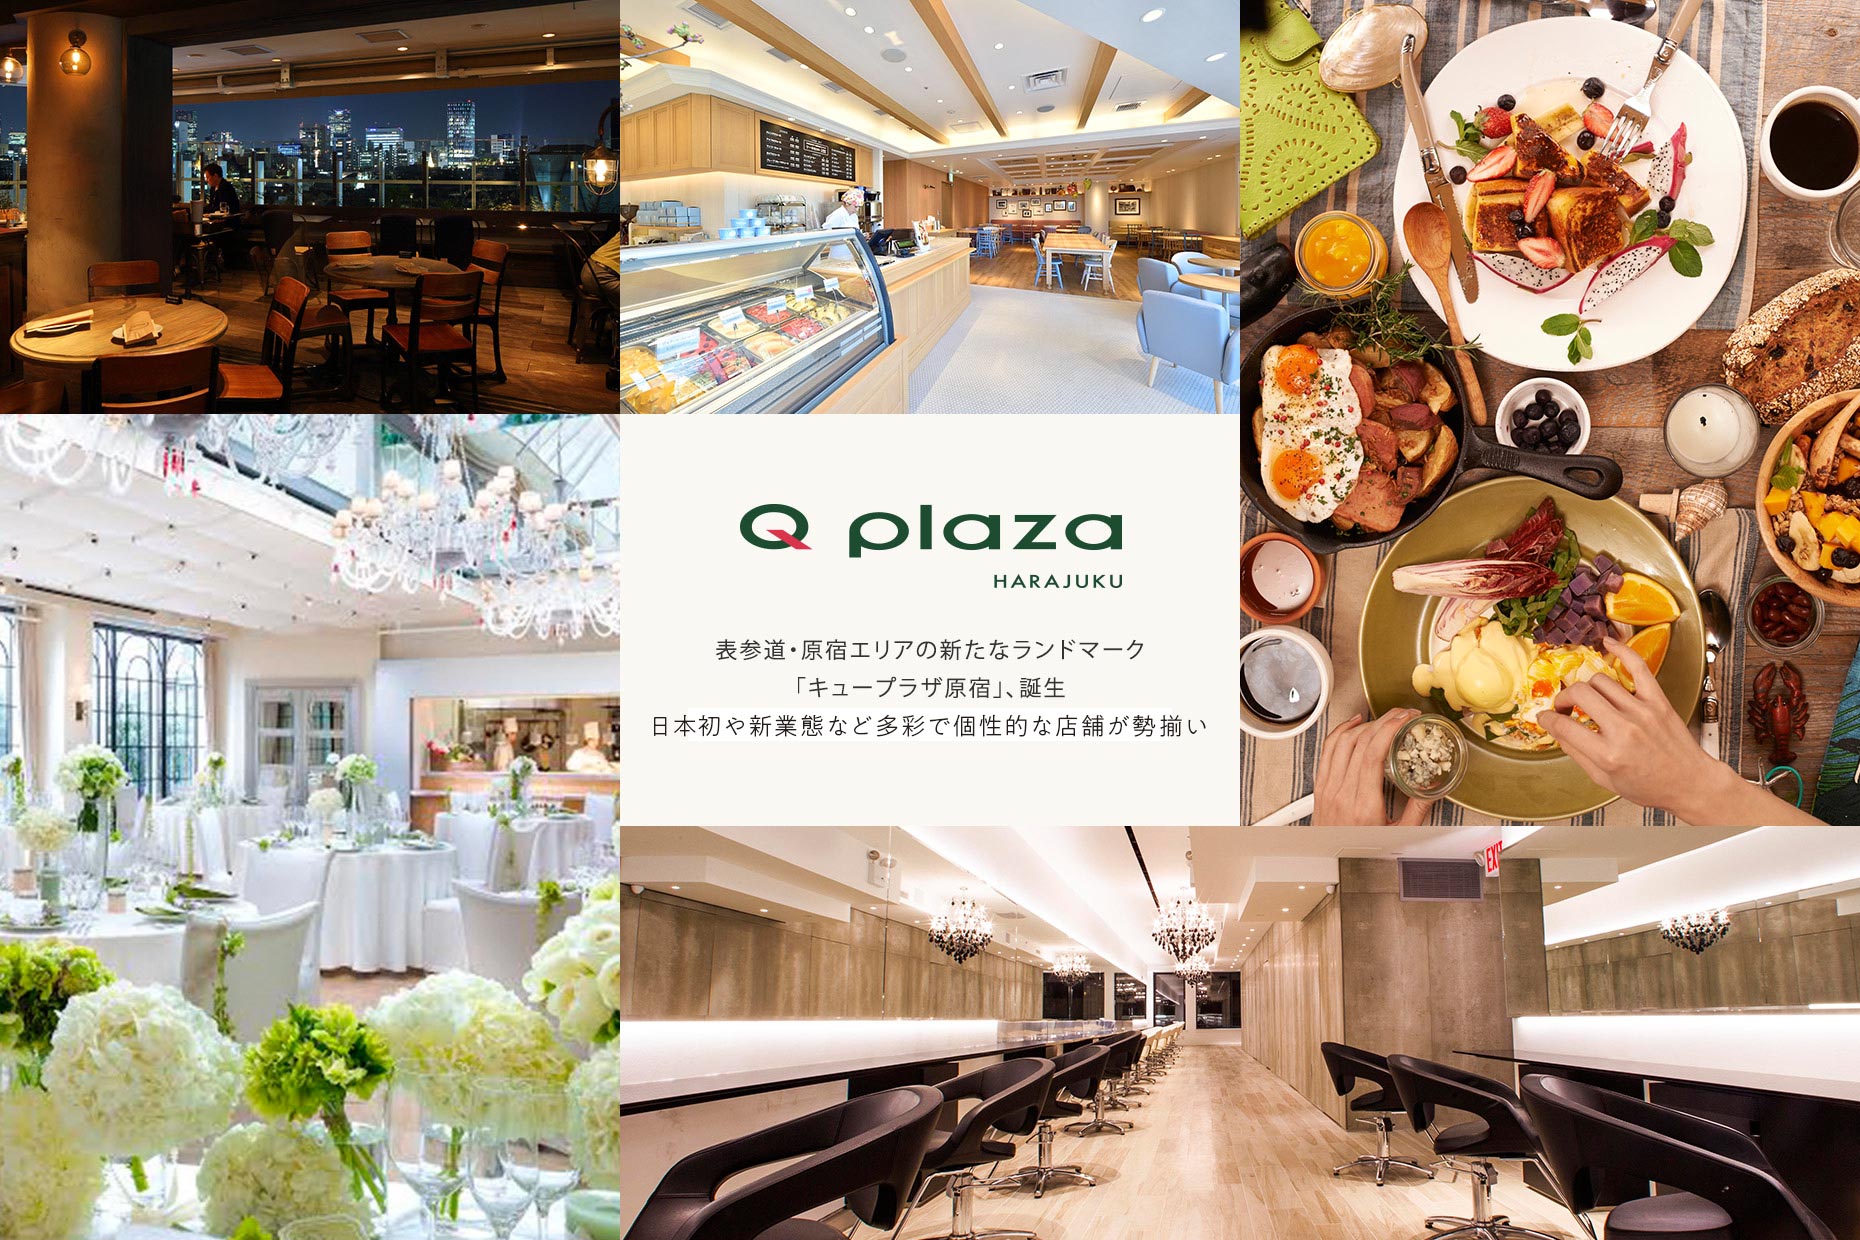 2015年3月27日OPEN! Q PLAZA HARAJUKU 日本初や新業態など多彩で個性的な店舗が勢揃い。表参道・原宿エリアの新たなランドマーク「キュープラザ原宿」、誕生。